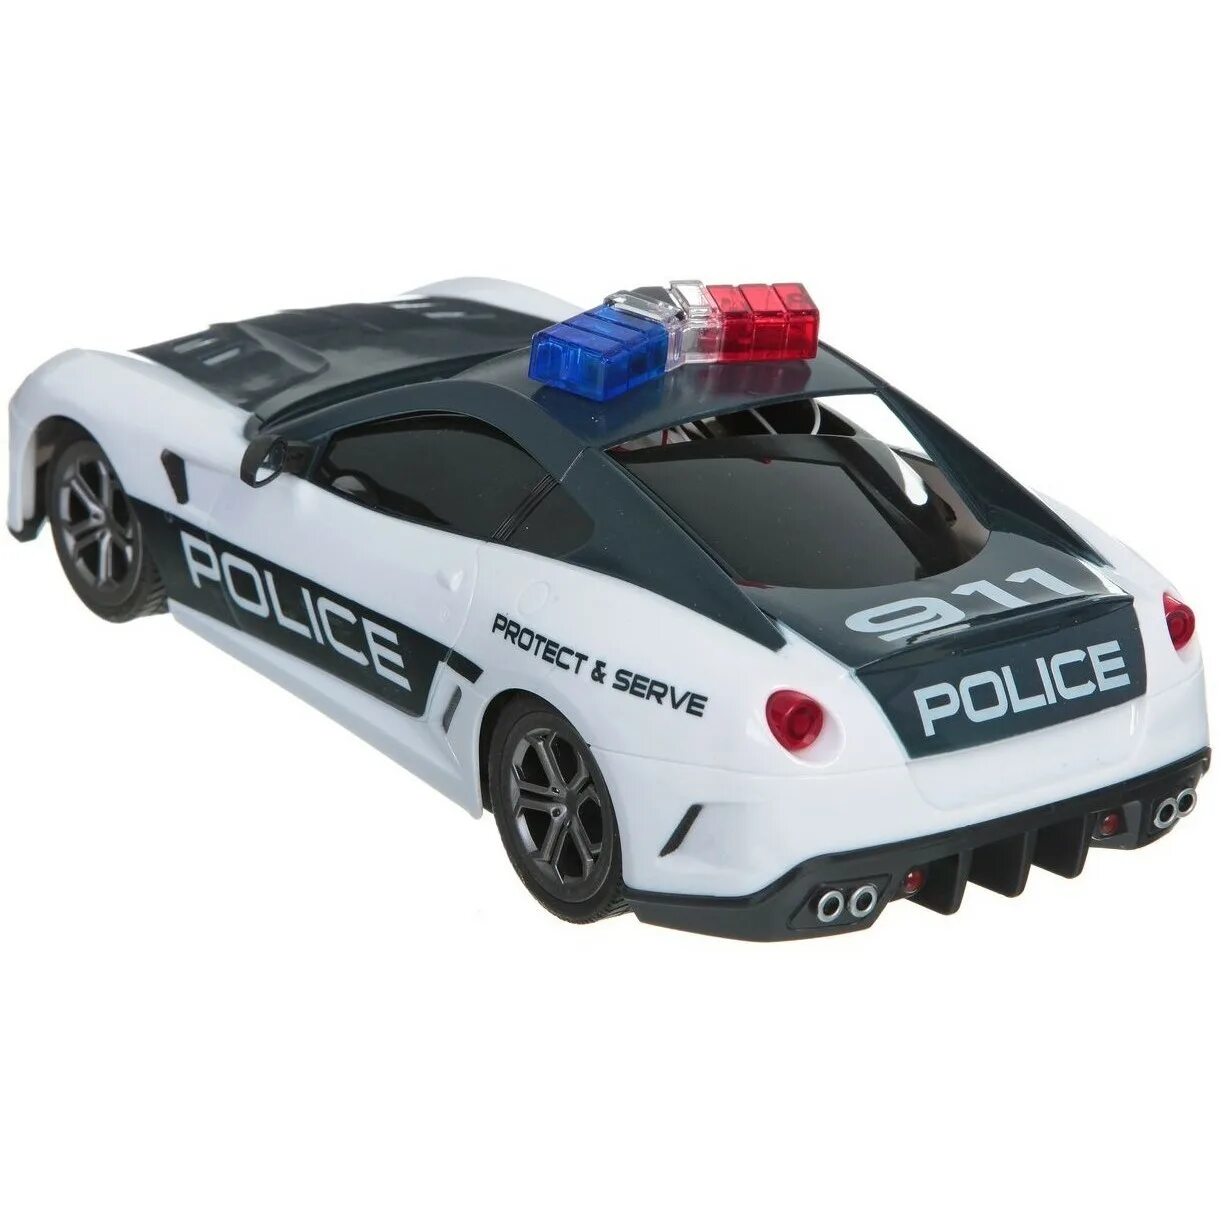 Полицейская машина на пульте. Police car авто на радиоуправлении ay 120-1a/169483. Машина полиция пульт управления хswat. Машина полиции на пульте управления e350 Coupe. Машина на р/у на аккумуляторе BMW Police синяя Tijago пульт управления.